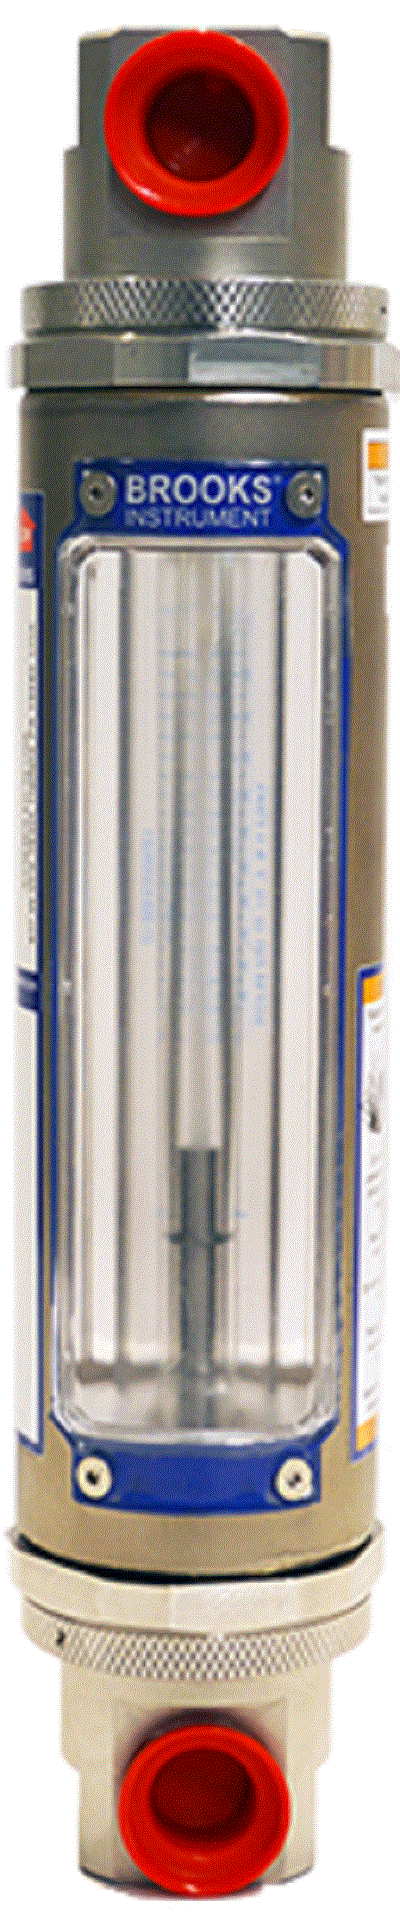 Ротаметр стеклянный для измерения расхода жидкости и газа BROOKS GT1306 Расходомеры